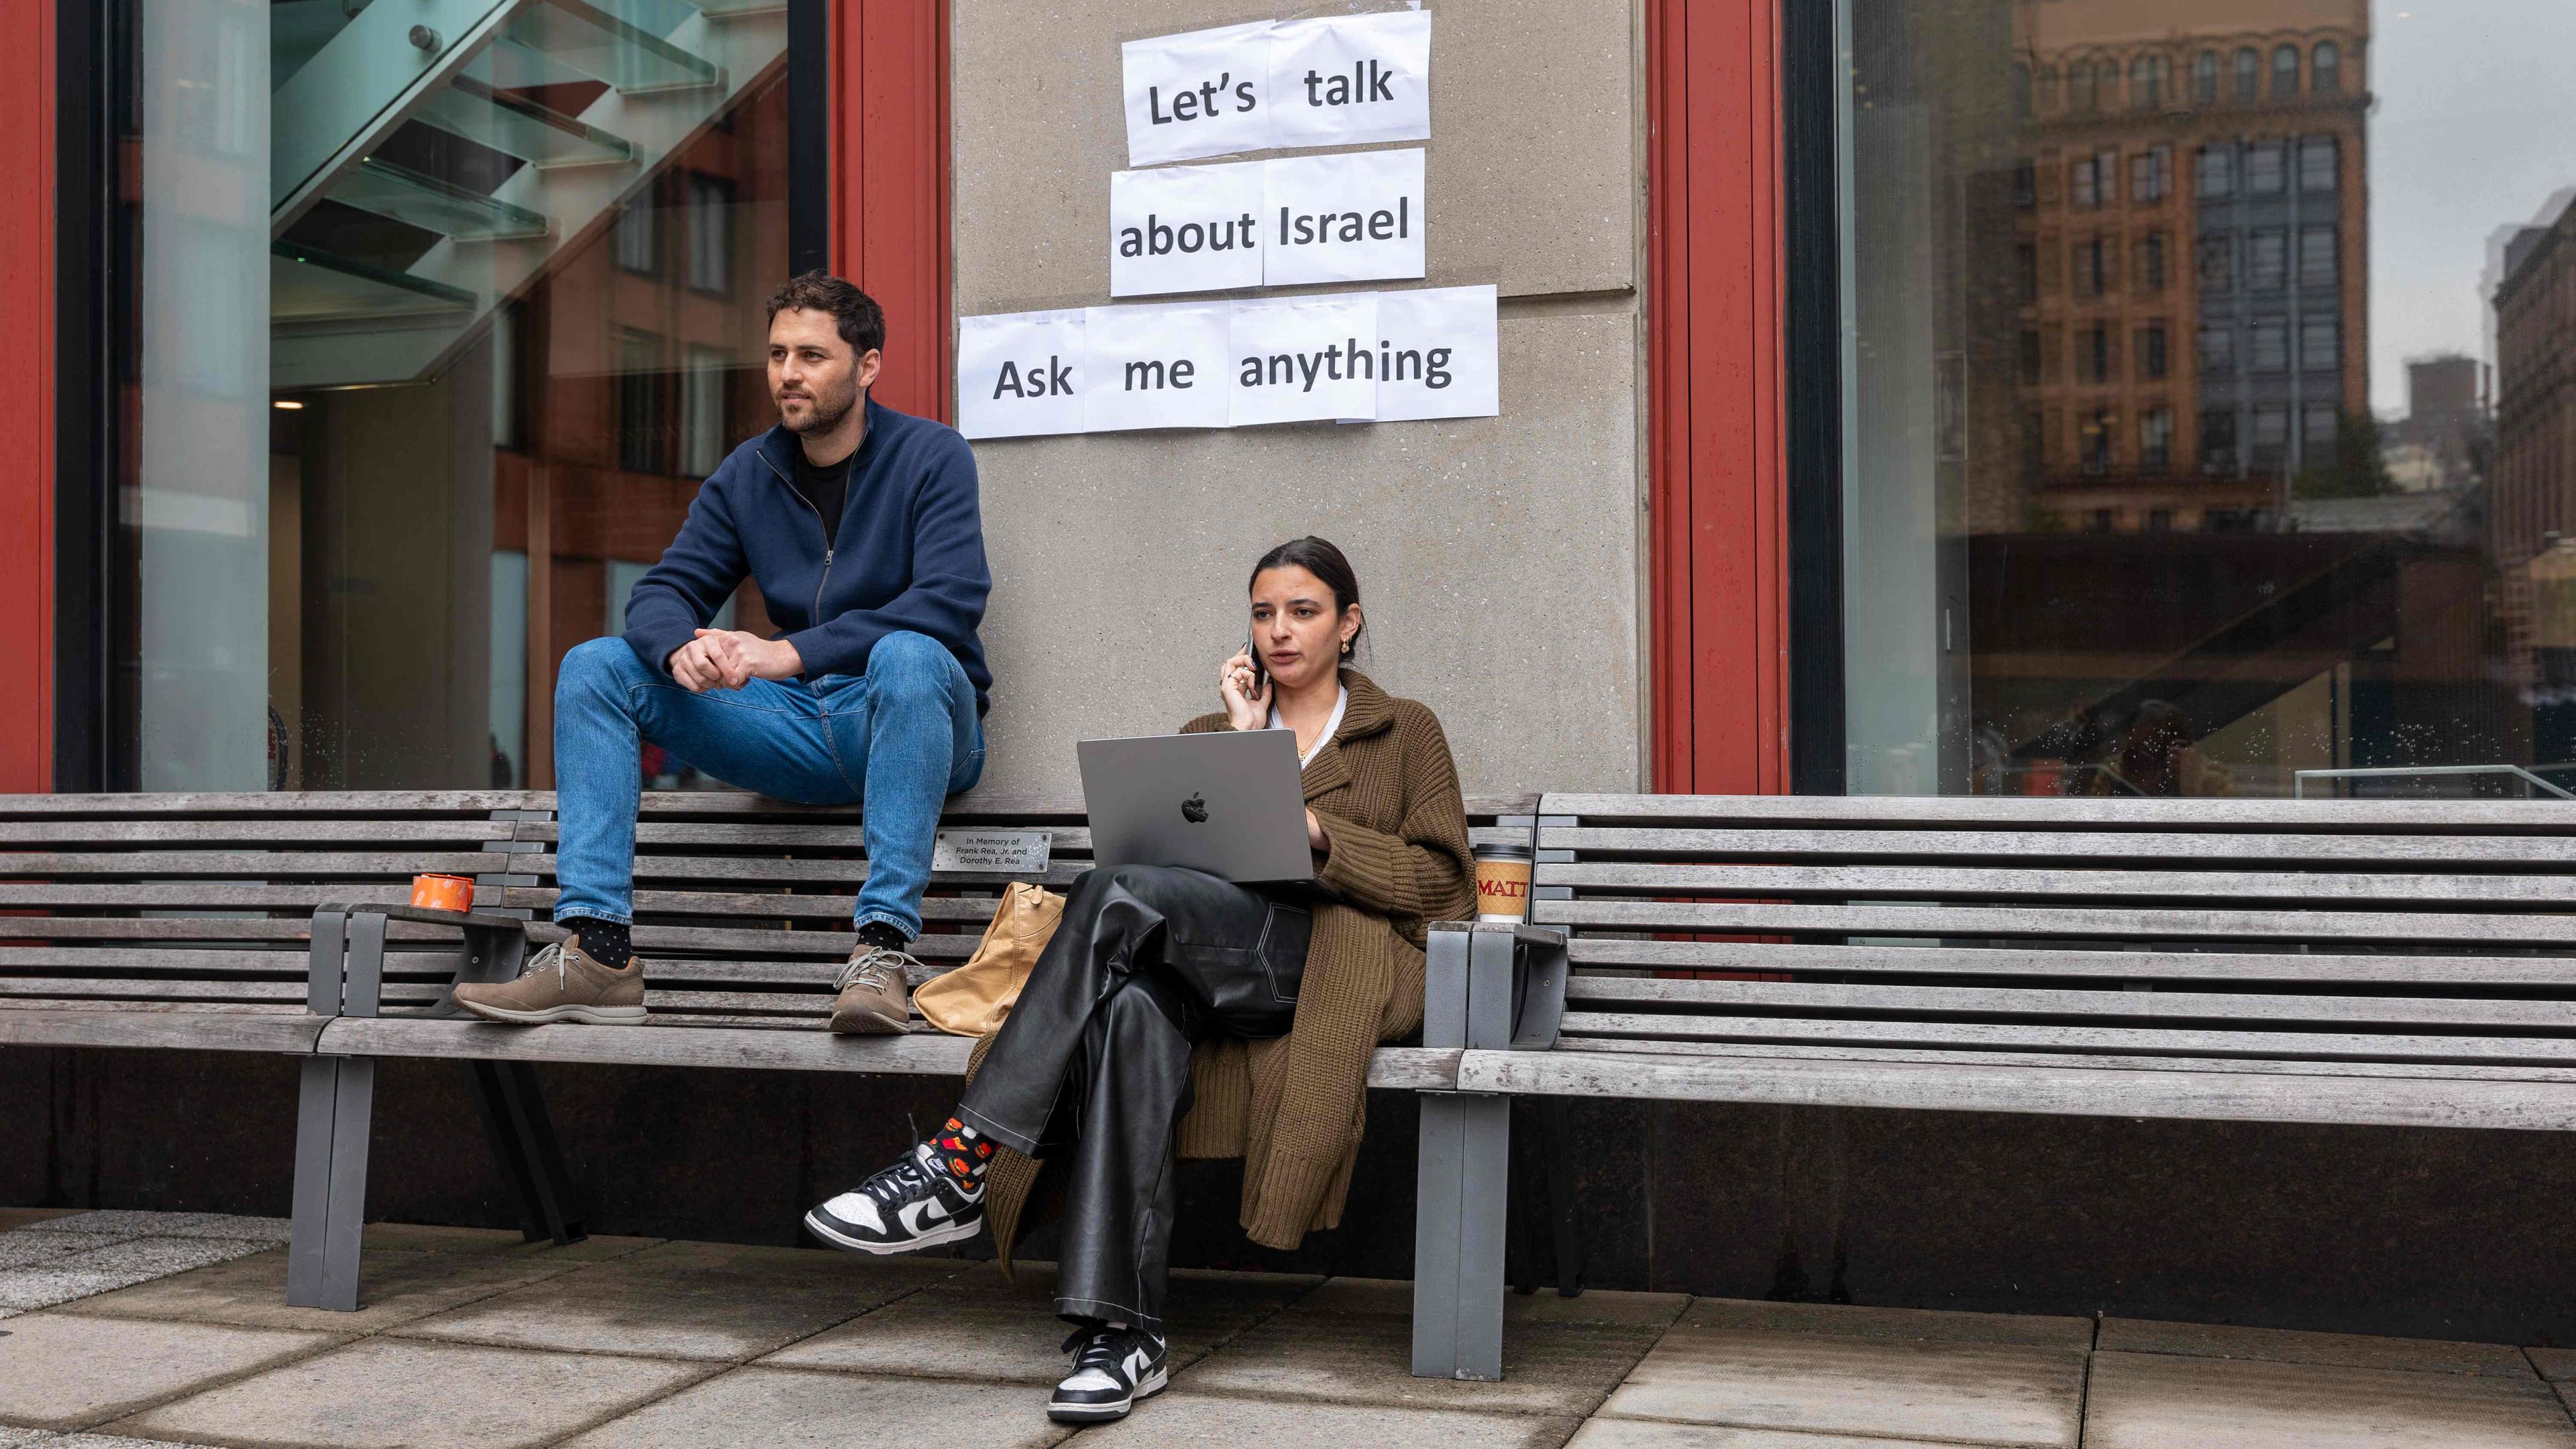 MAnn und Frau auf Bank, darüber Schild "Let's talk about Israel"